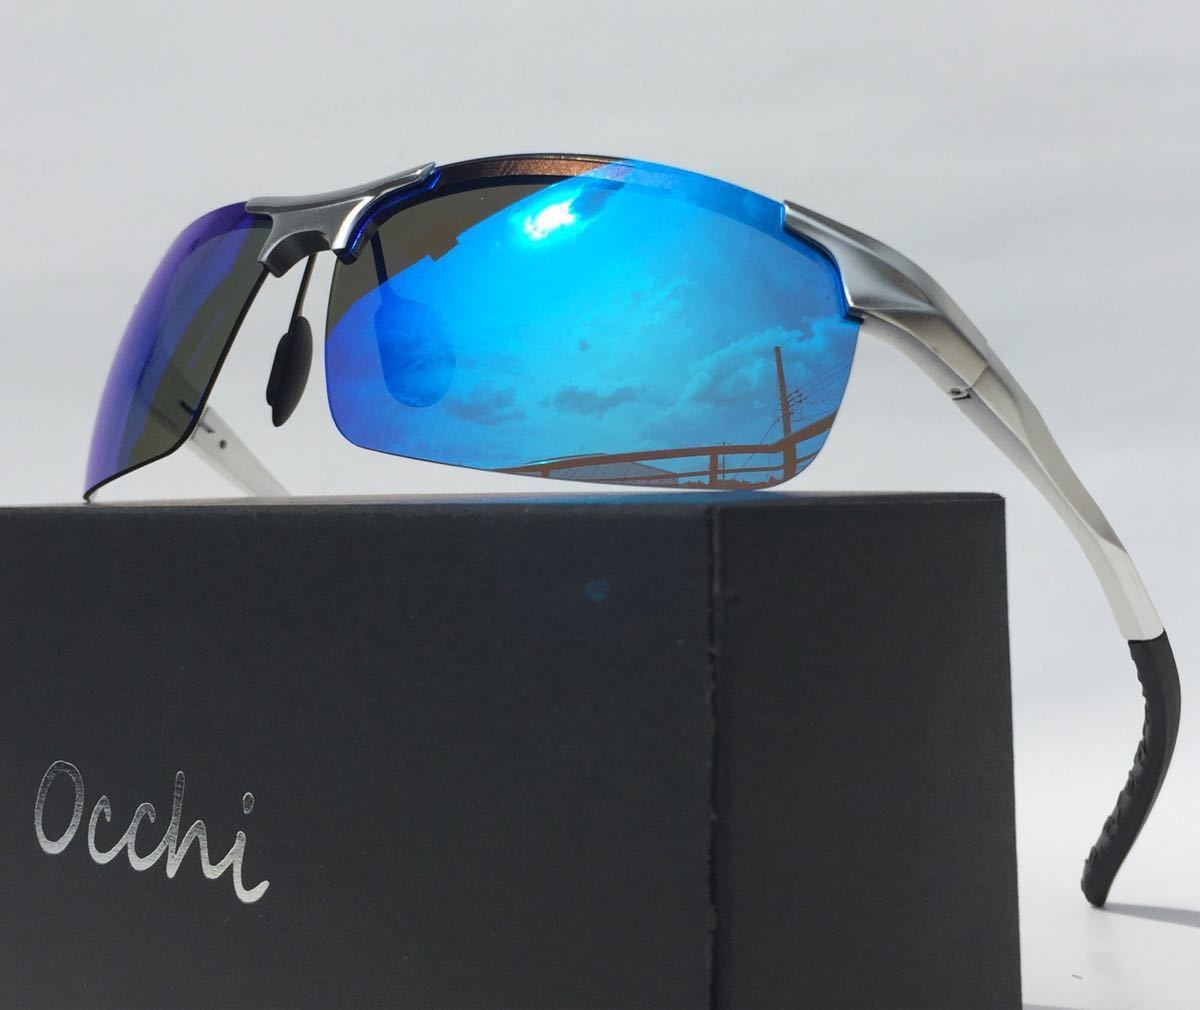 新品 OCCHI 偏光サングラス レンズUV400 軽量  ブルーミラー